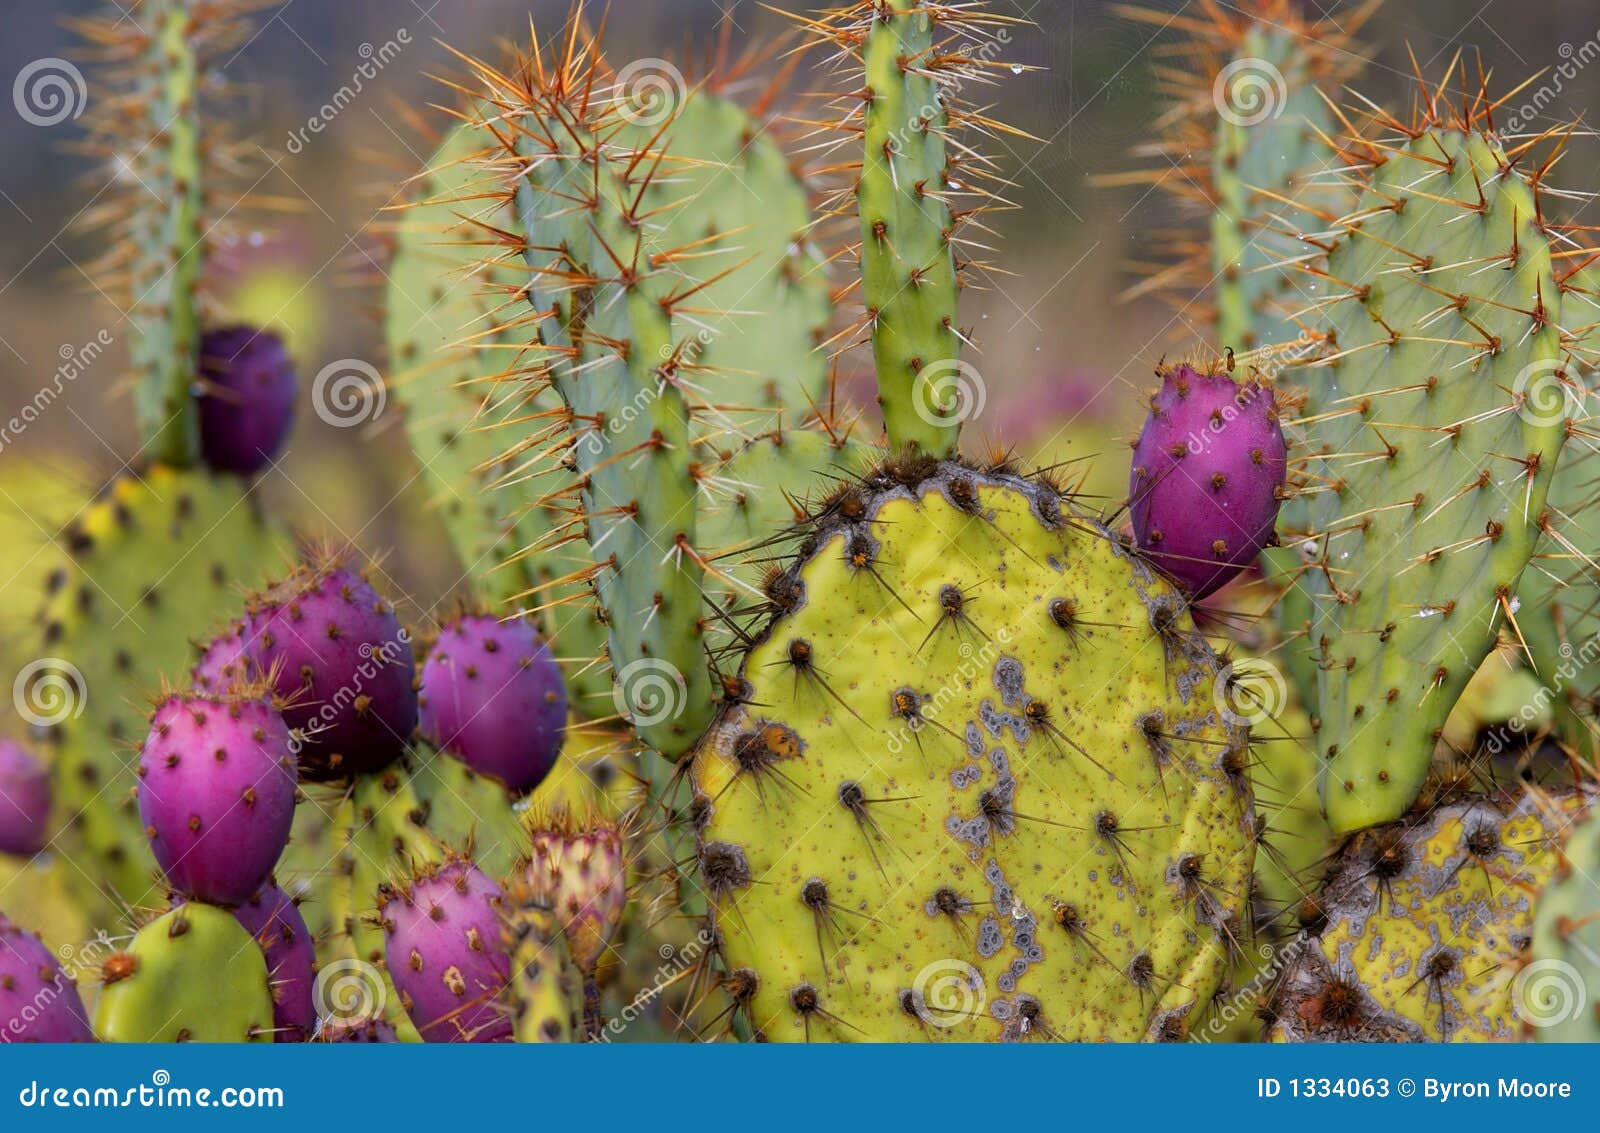 beaver cactus